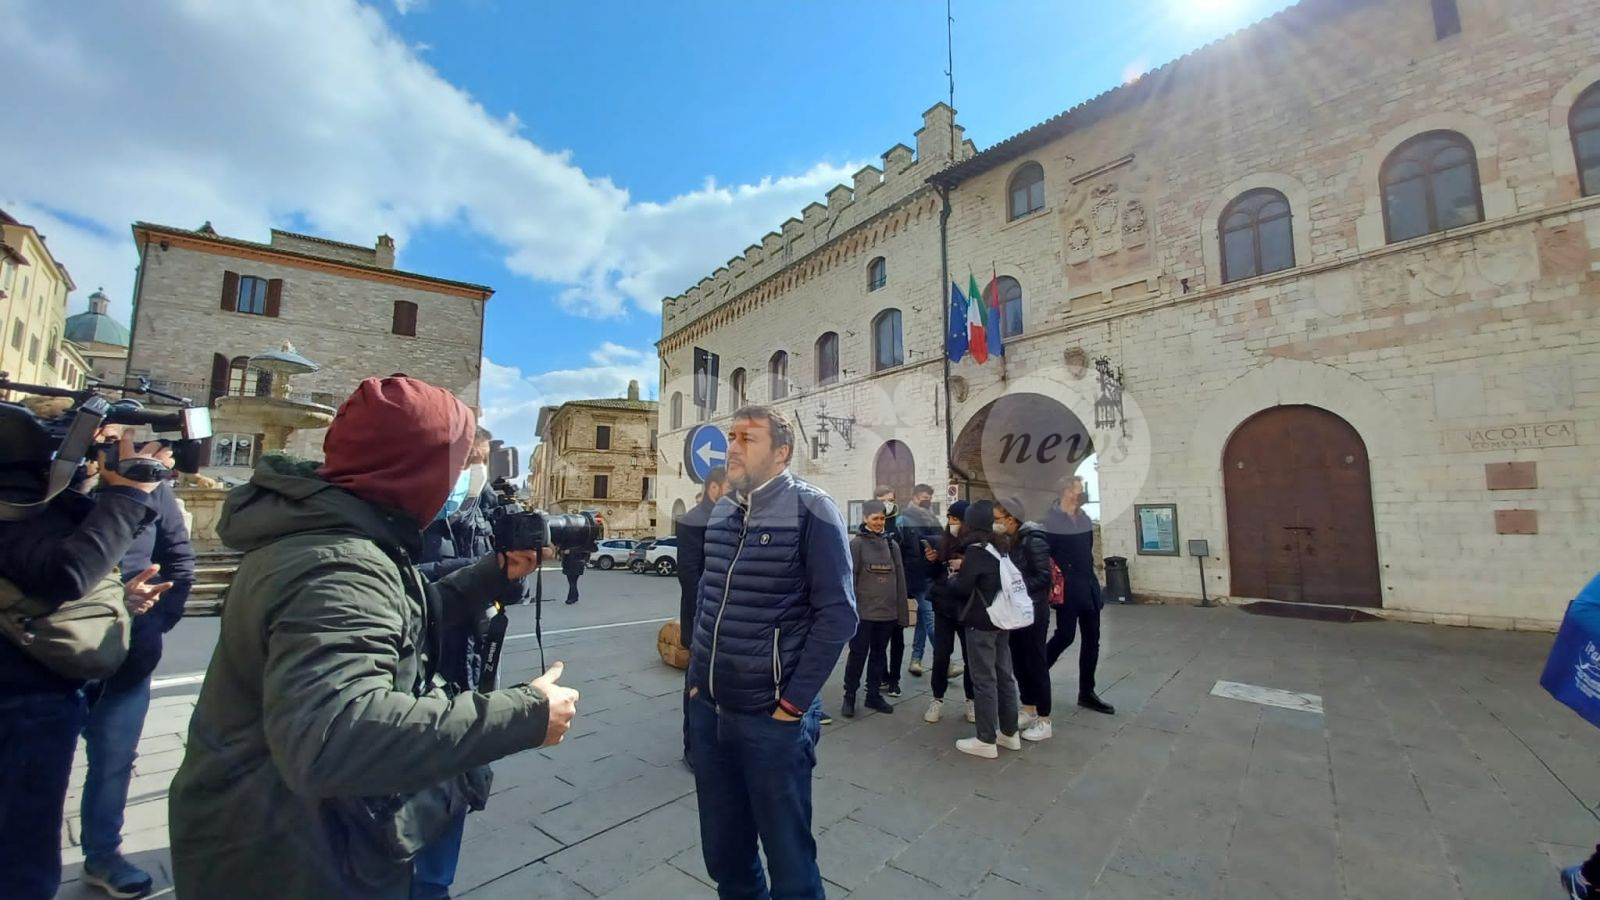 Matteo Salvini ad Assisi: "La pace viene prima di tutto, ho pregato per questo" (foto+video)